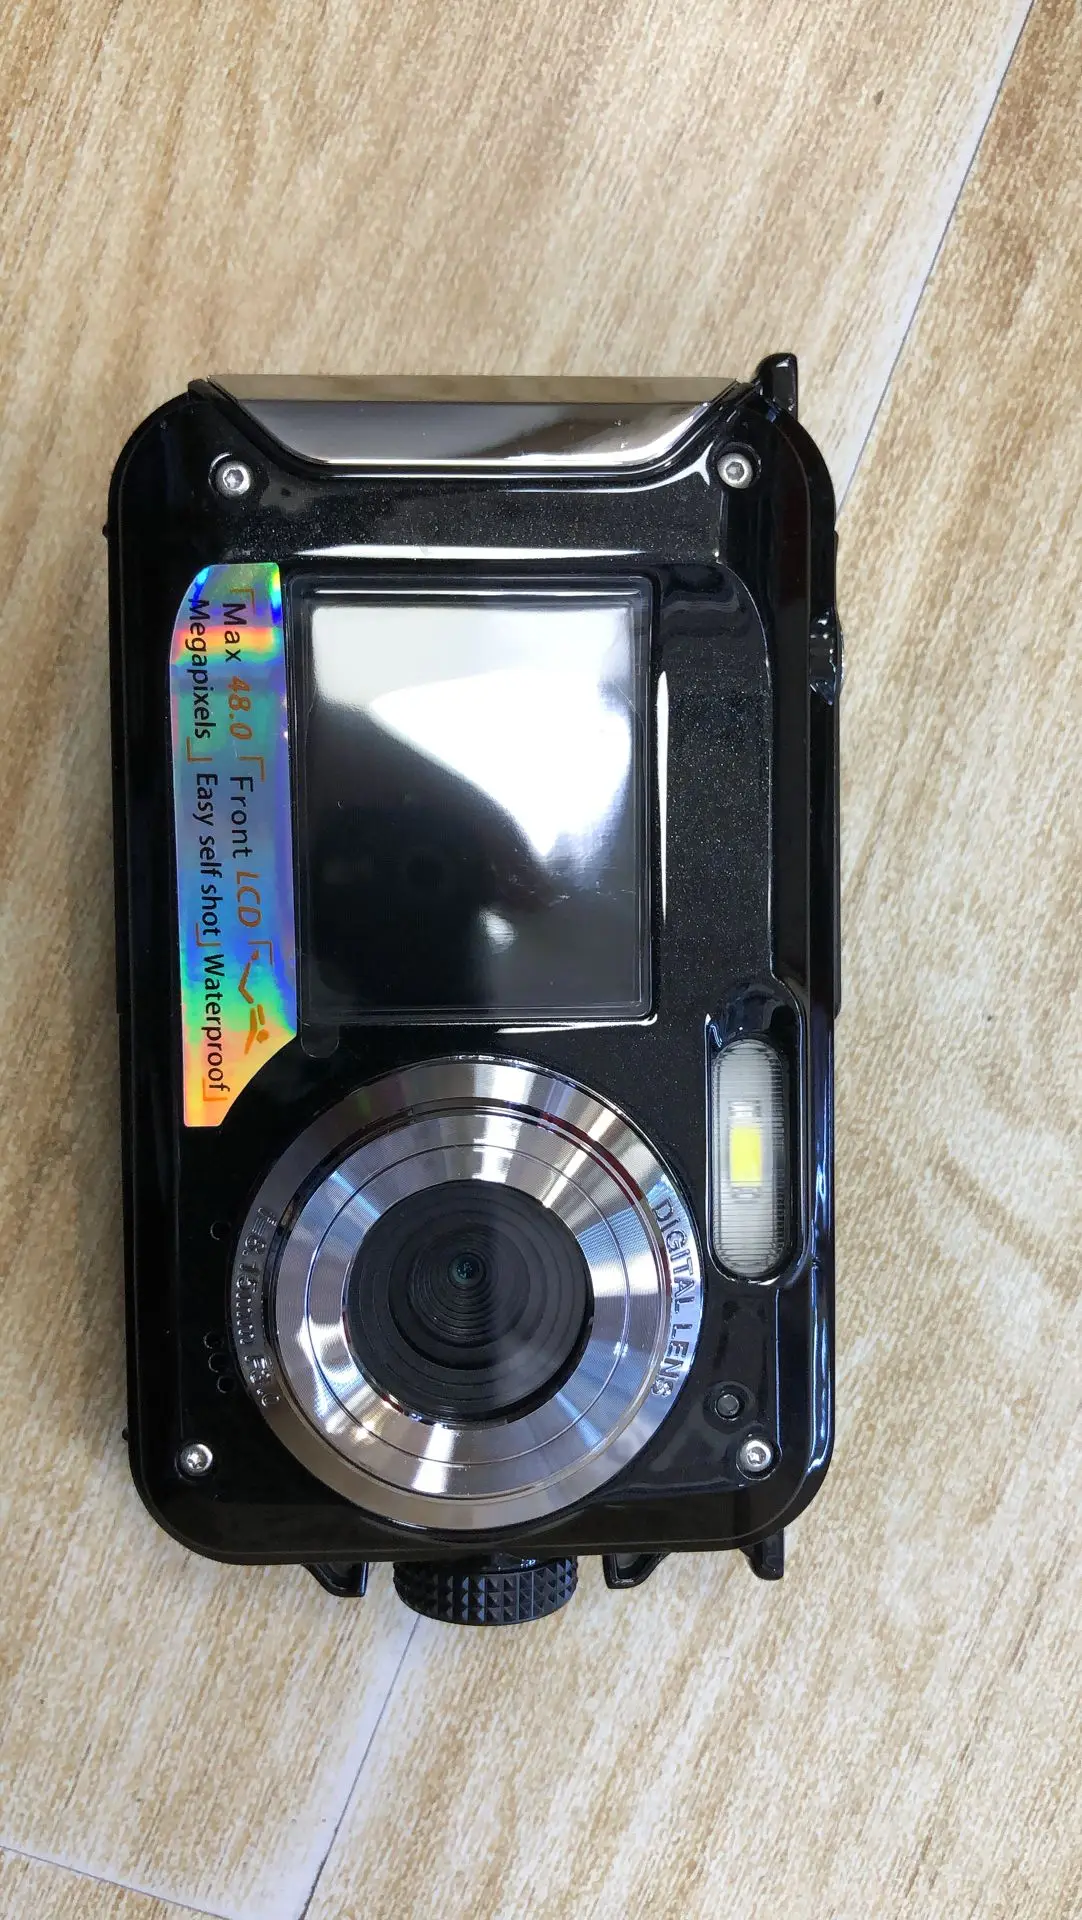 H368 цифровой Камера 3M Водонепроницаемый Камера 2,7 Inch 1,8 Inch двойной Экран Max 48MP 16 цифровым зумом Cardinal Numeral черный видеокамера